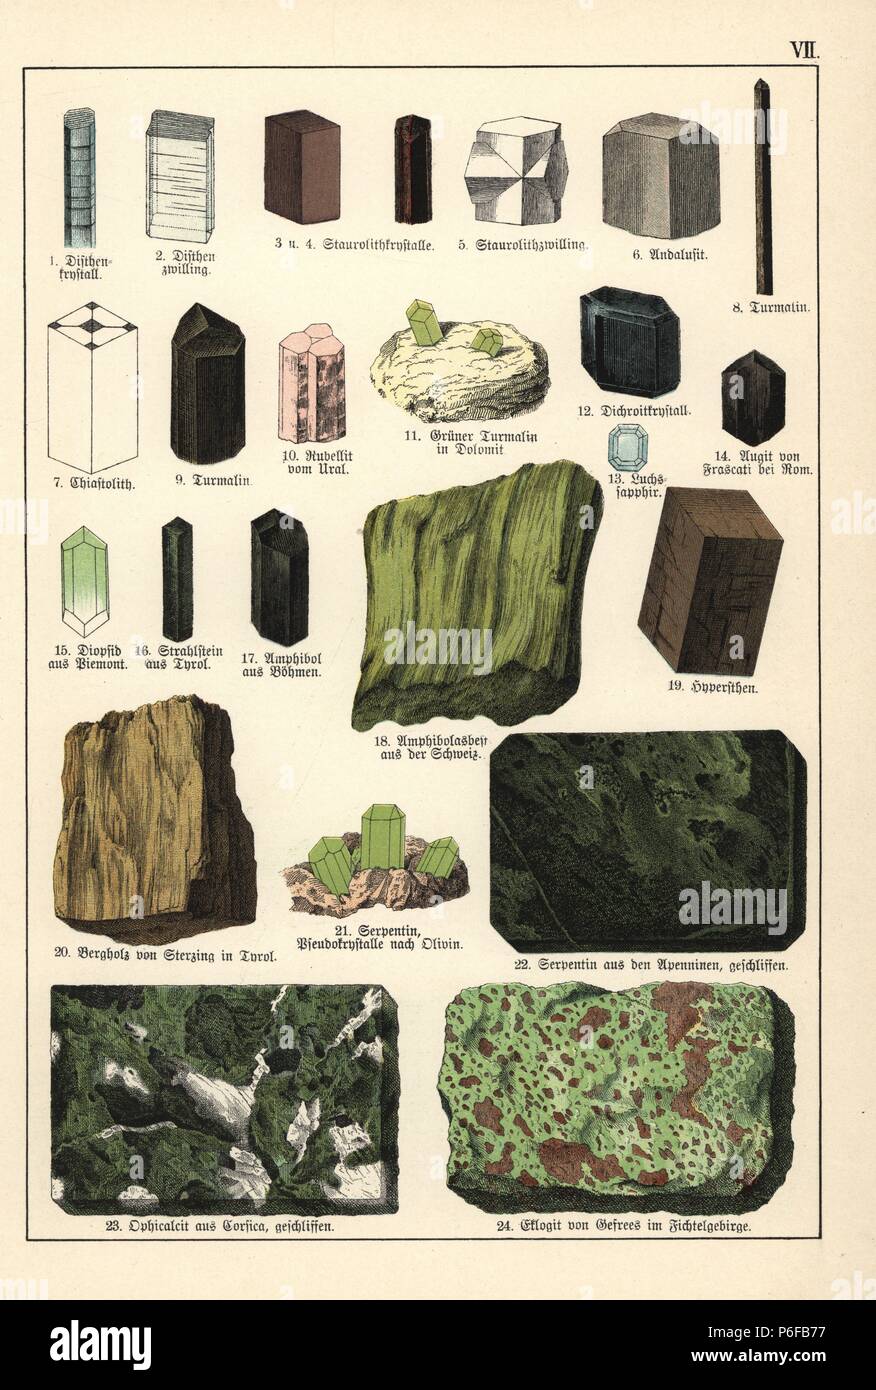 Various minerals and crystals including kyanite, staurolite, andalusite, tourmaline, chiastolite, rubellite, cordierite, pyroxene, diopside, actinolite, amphibole, hypersthene, mountain leather, asbestos, serpentine, ophicalcite and eclogite. Chromolithograph from Dr. Aldolph Kenngott's 'Mineralogy' section in Gotthilf Heinrich von Schubert's 'Naturgeschichte,' Schreiber, Munich, 1886. Stock Photo